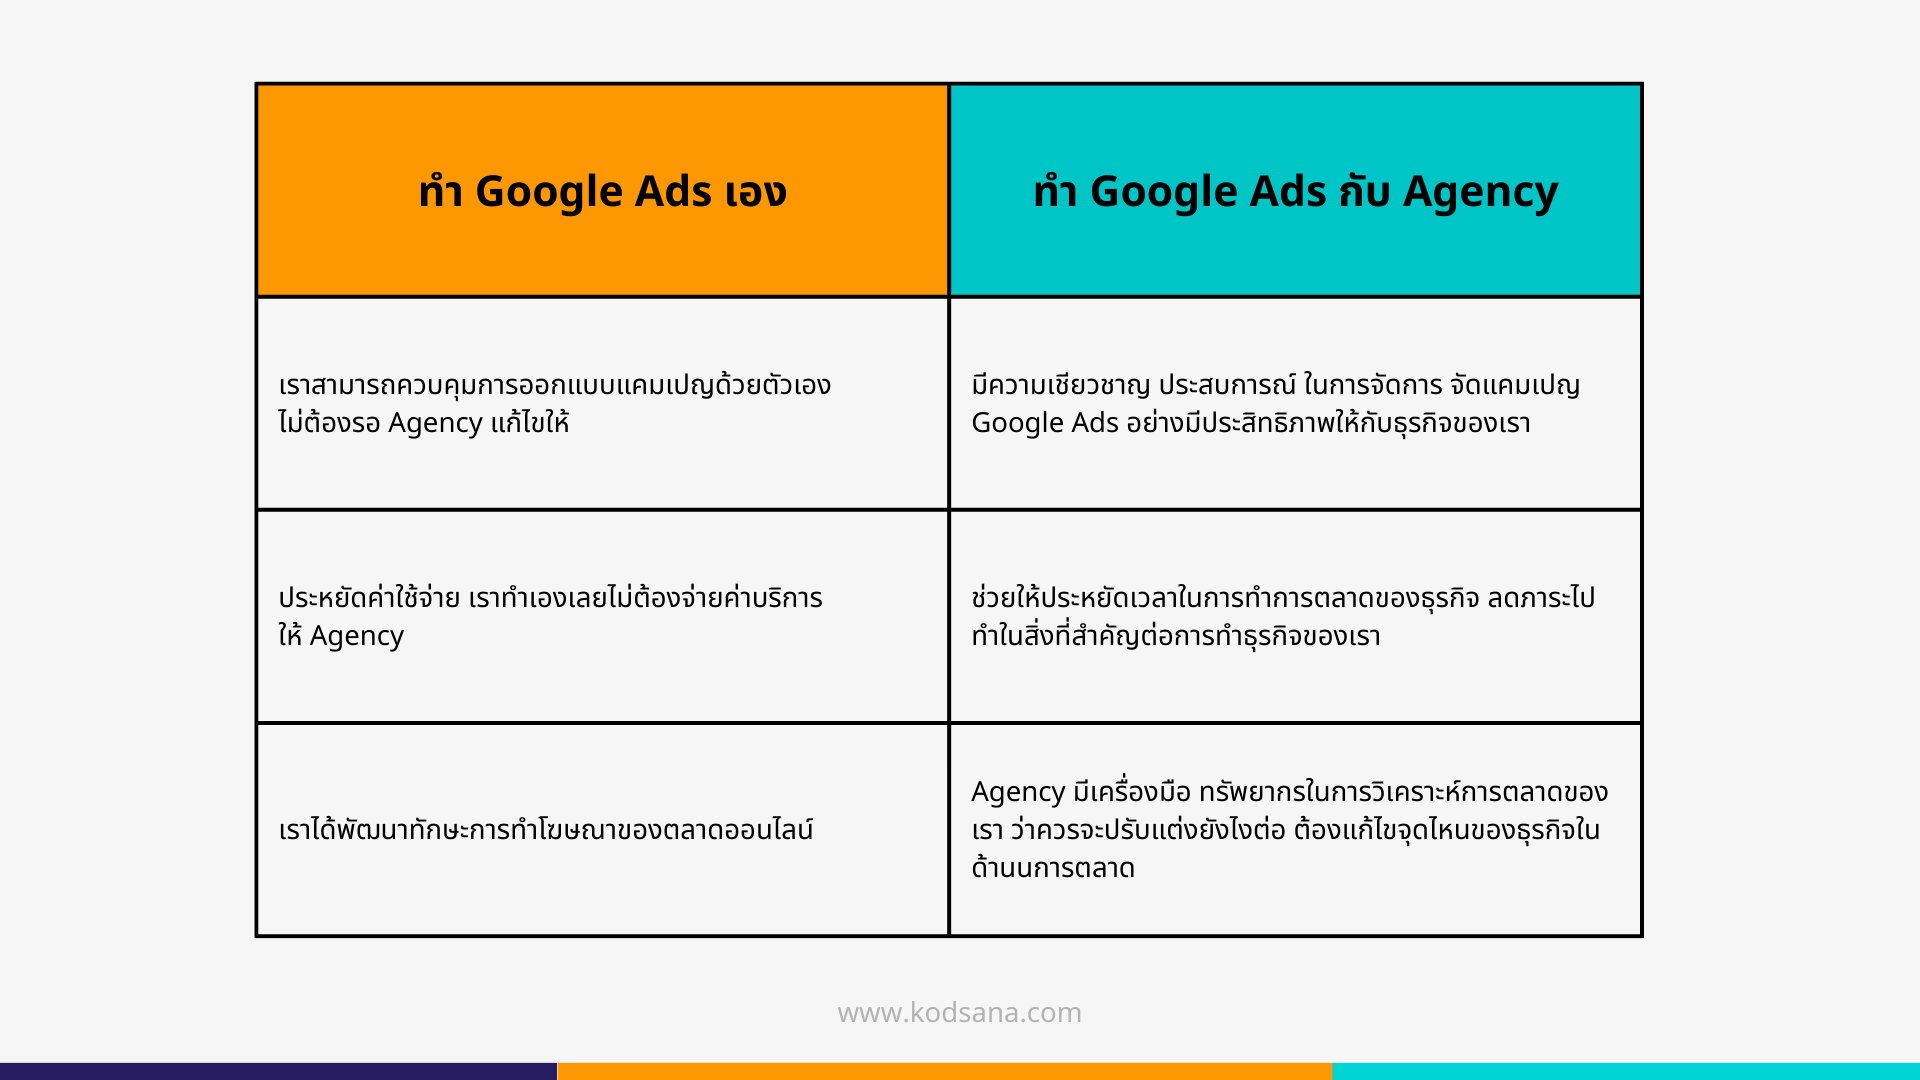 ข้อเสีย ของการทำ Google Ads เอง VS ทำกับ Agency 